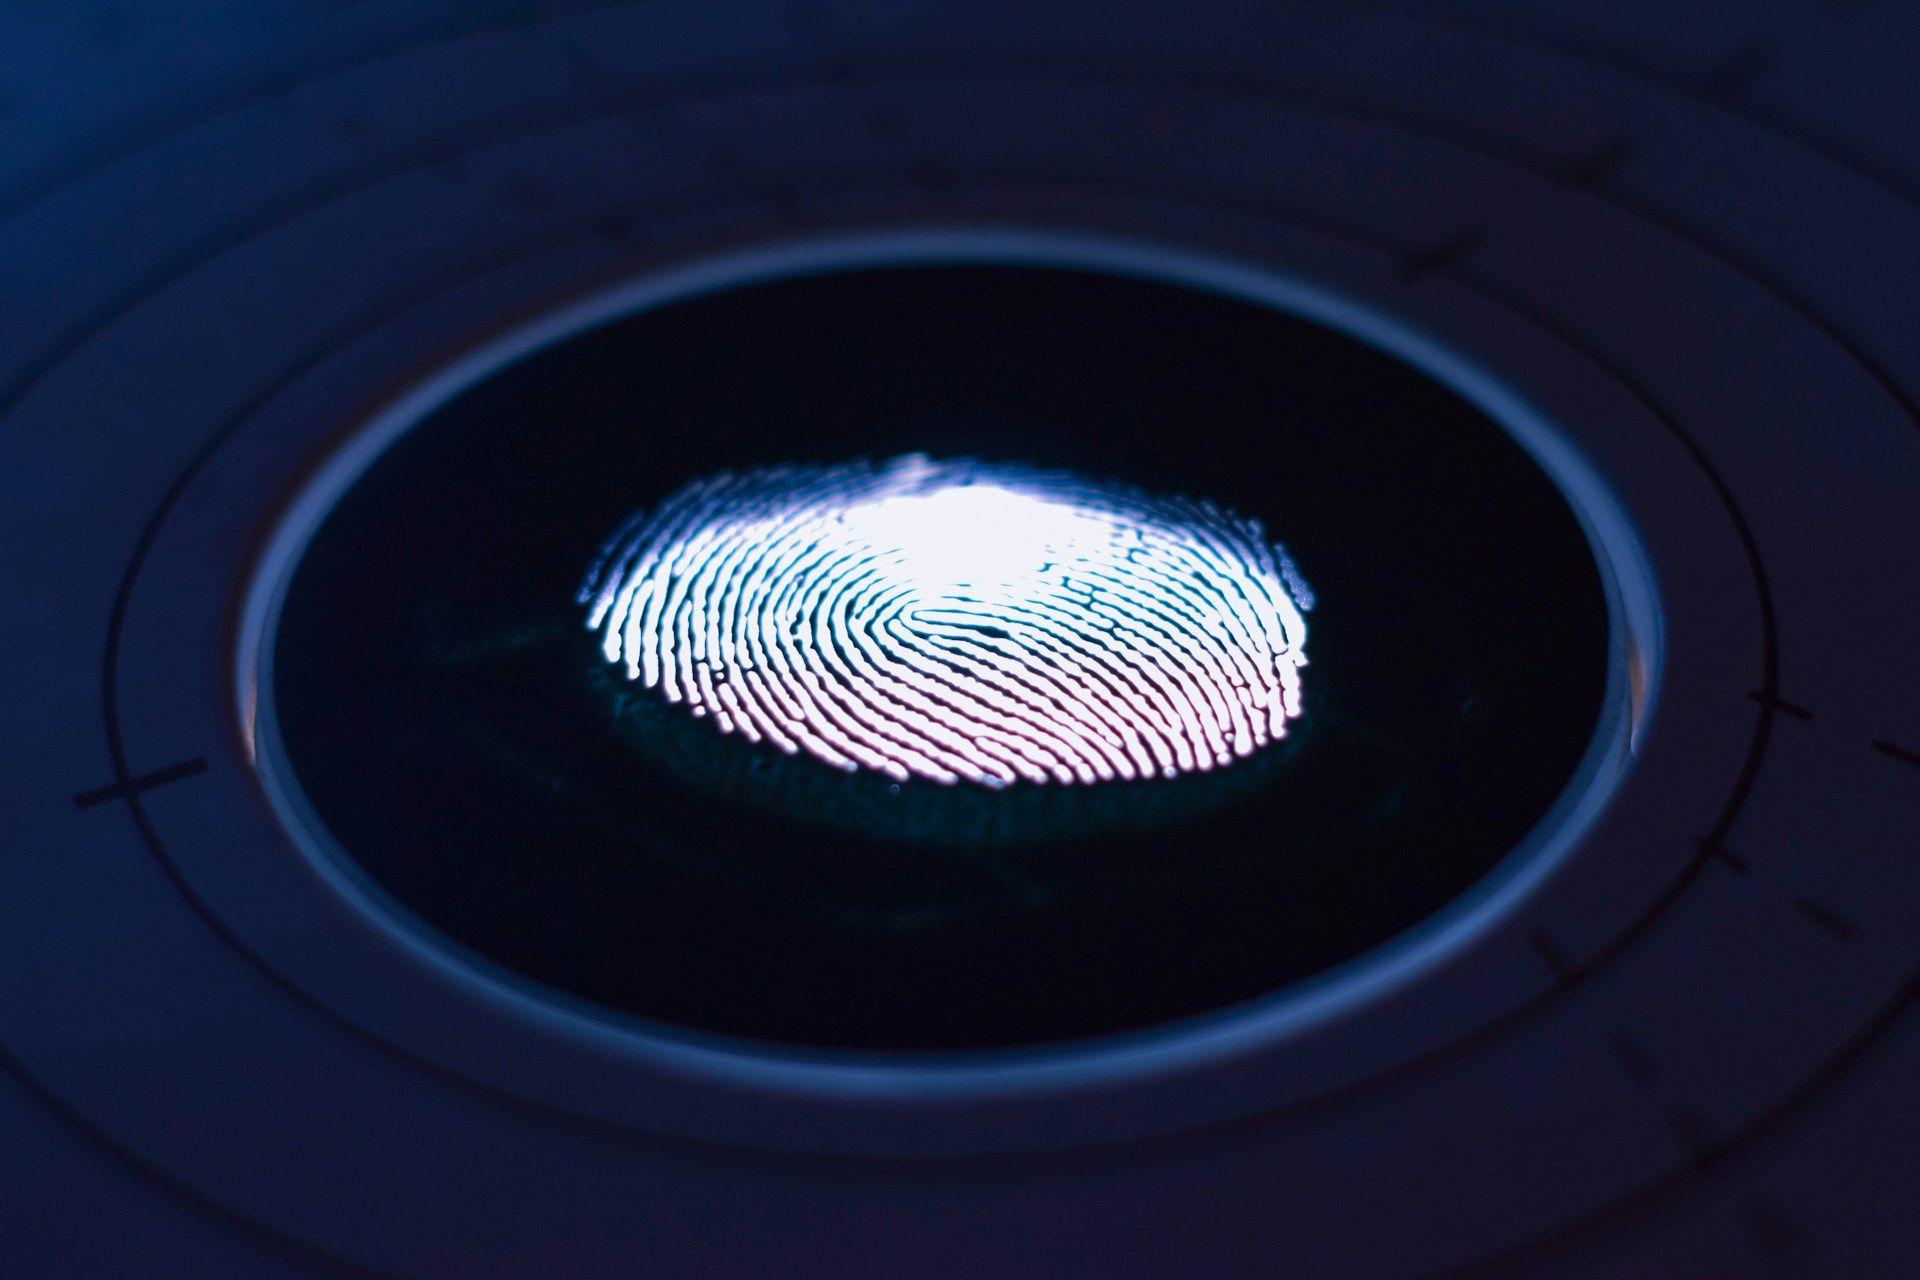   Um padrão de impressão digital brilhante iluminado em um sensor biométrico com círculos concêntricos e marcas de calibração ao redor.